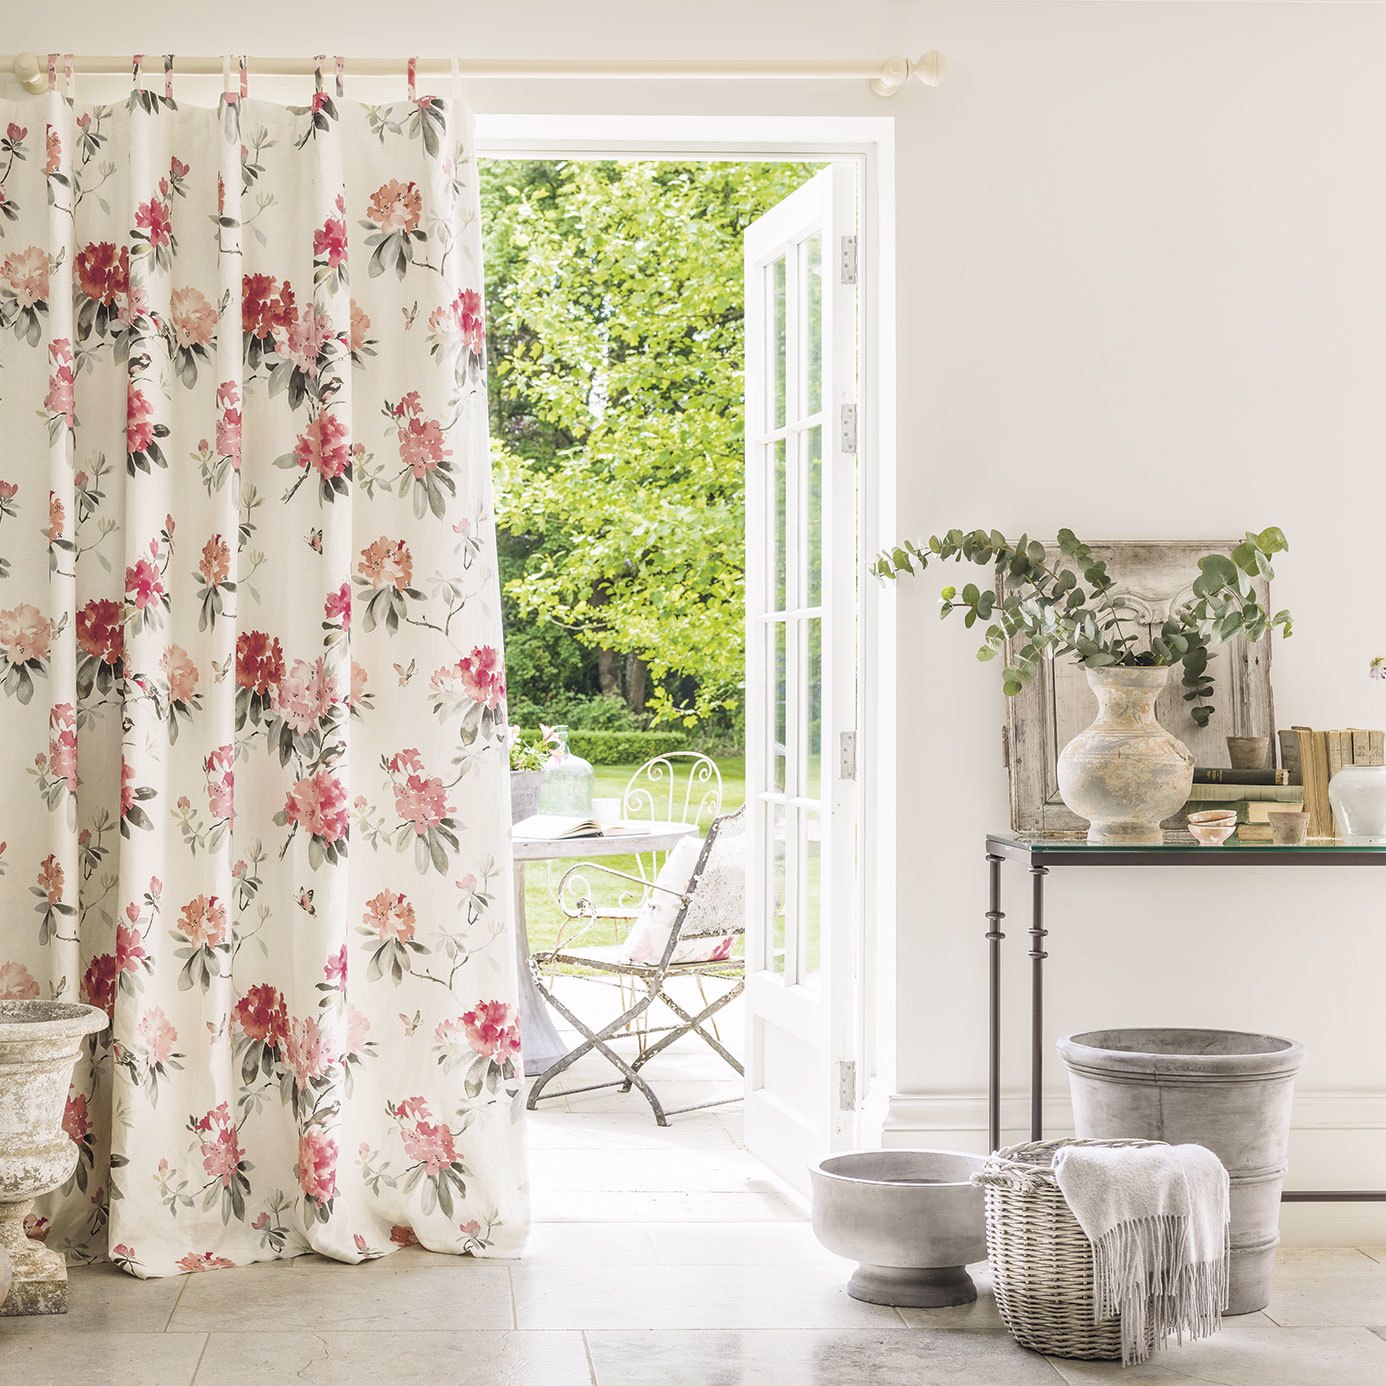 Rhodera Blossom Fabric by SAN